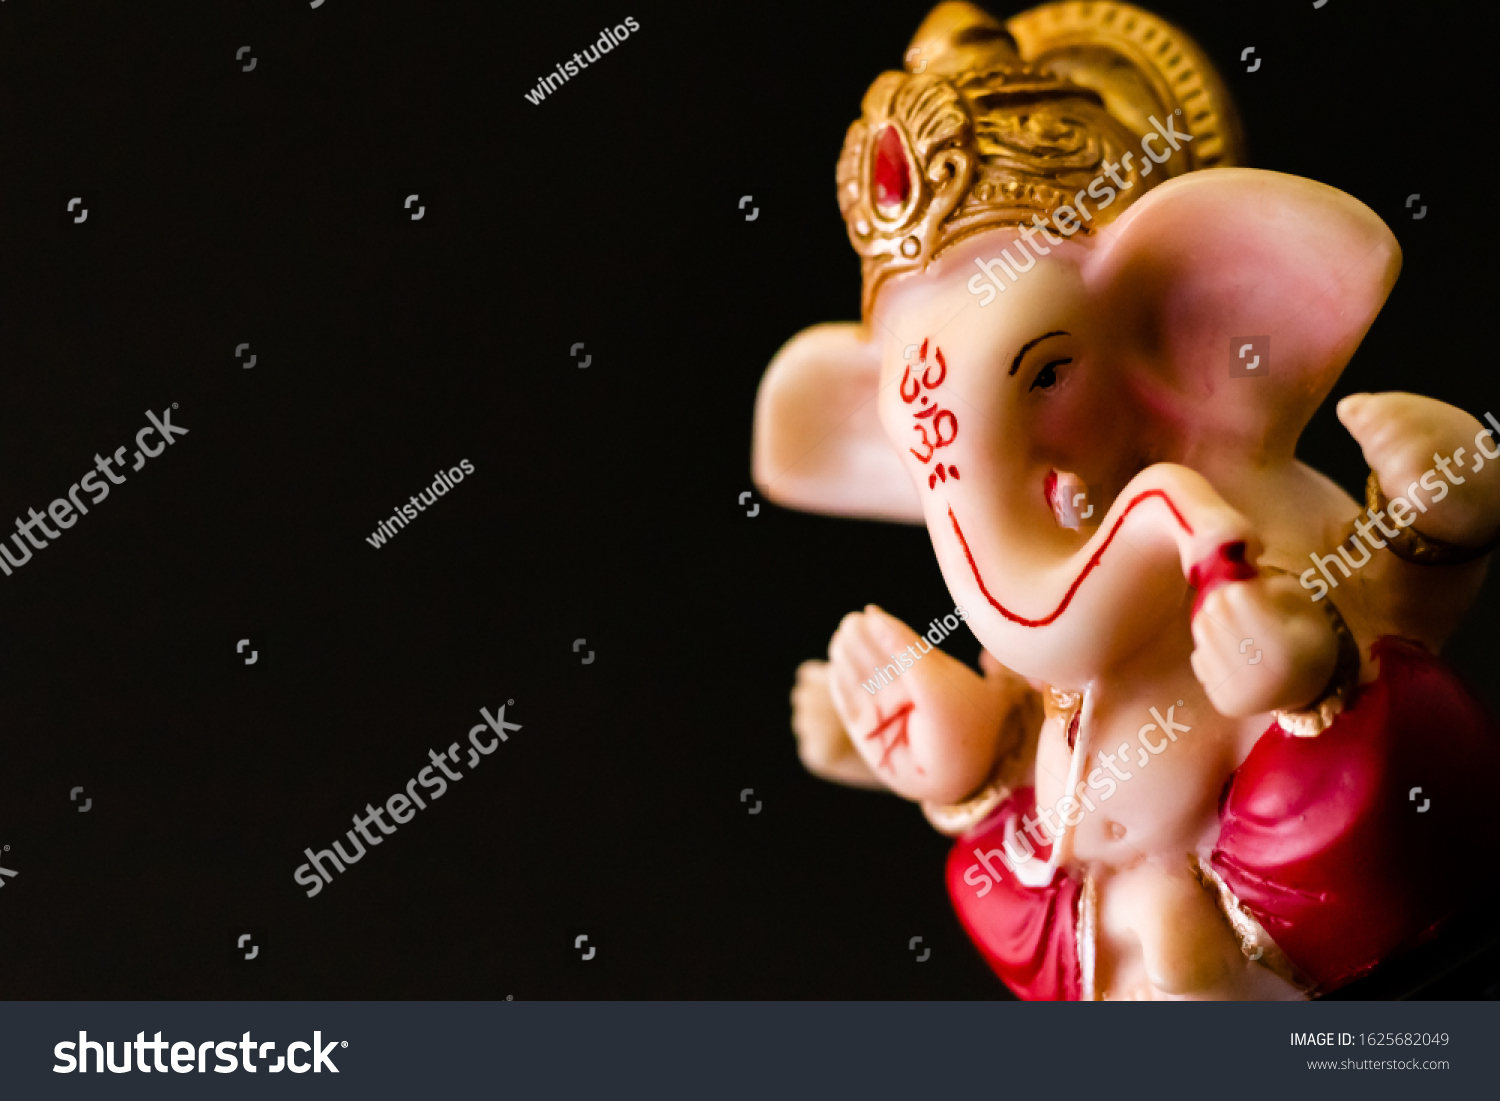 8 Ganesha c Images, Stock Photos & Vectors | Shutterstock